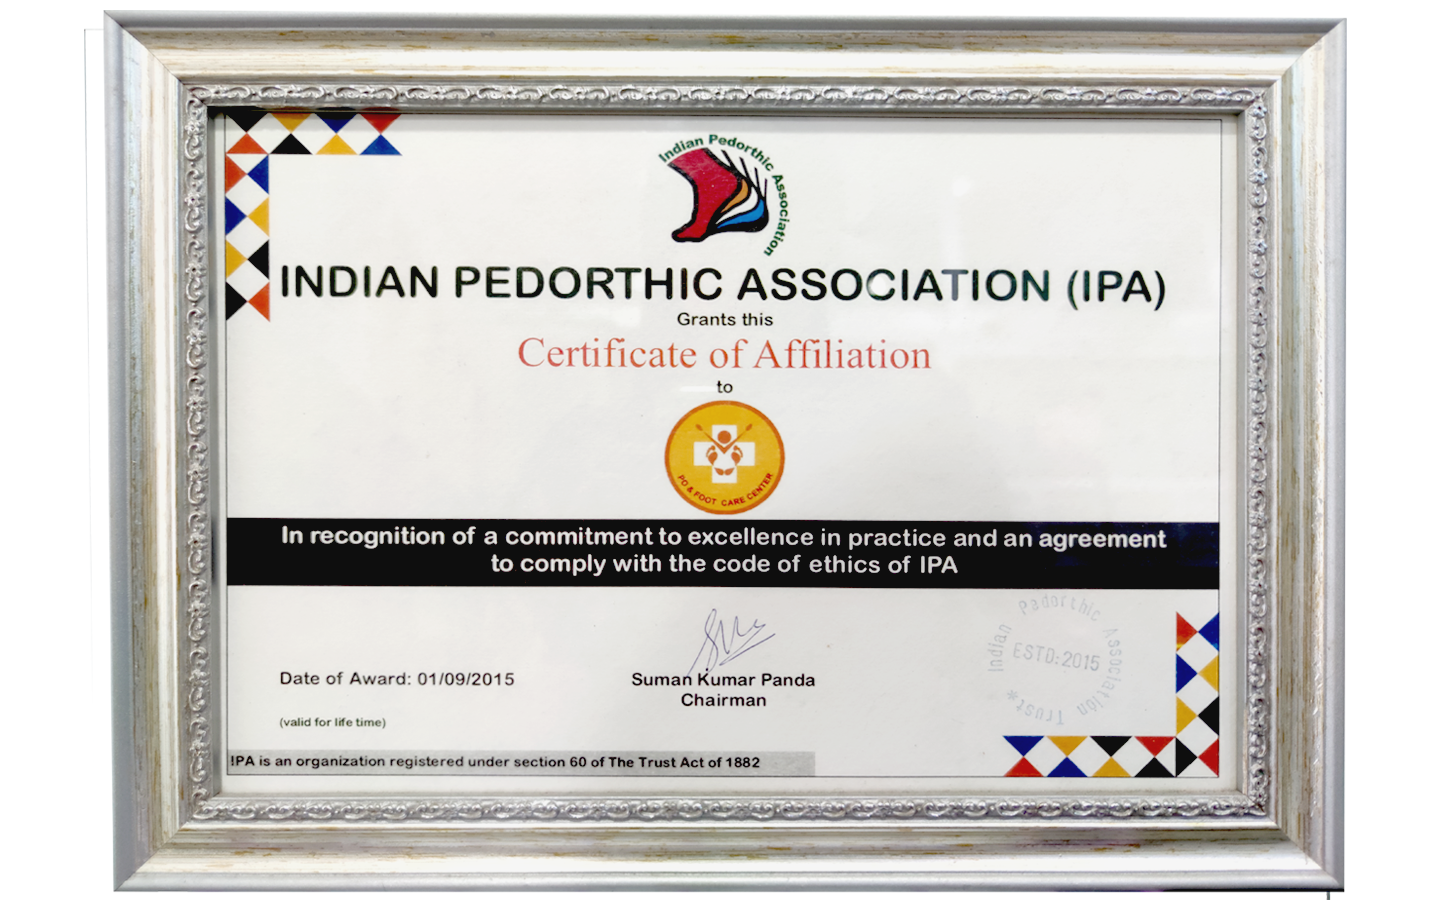 คลินิกได้รับการรับรองมาตรฐาน จากองค์กรด้านเท้าสากลอินเดีย Indian Pedorthics Association แบบตลอดชีพ เริ่มตั้งแต่ ปี2015